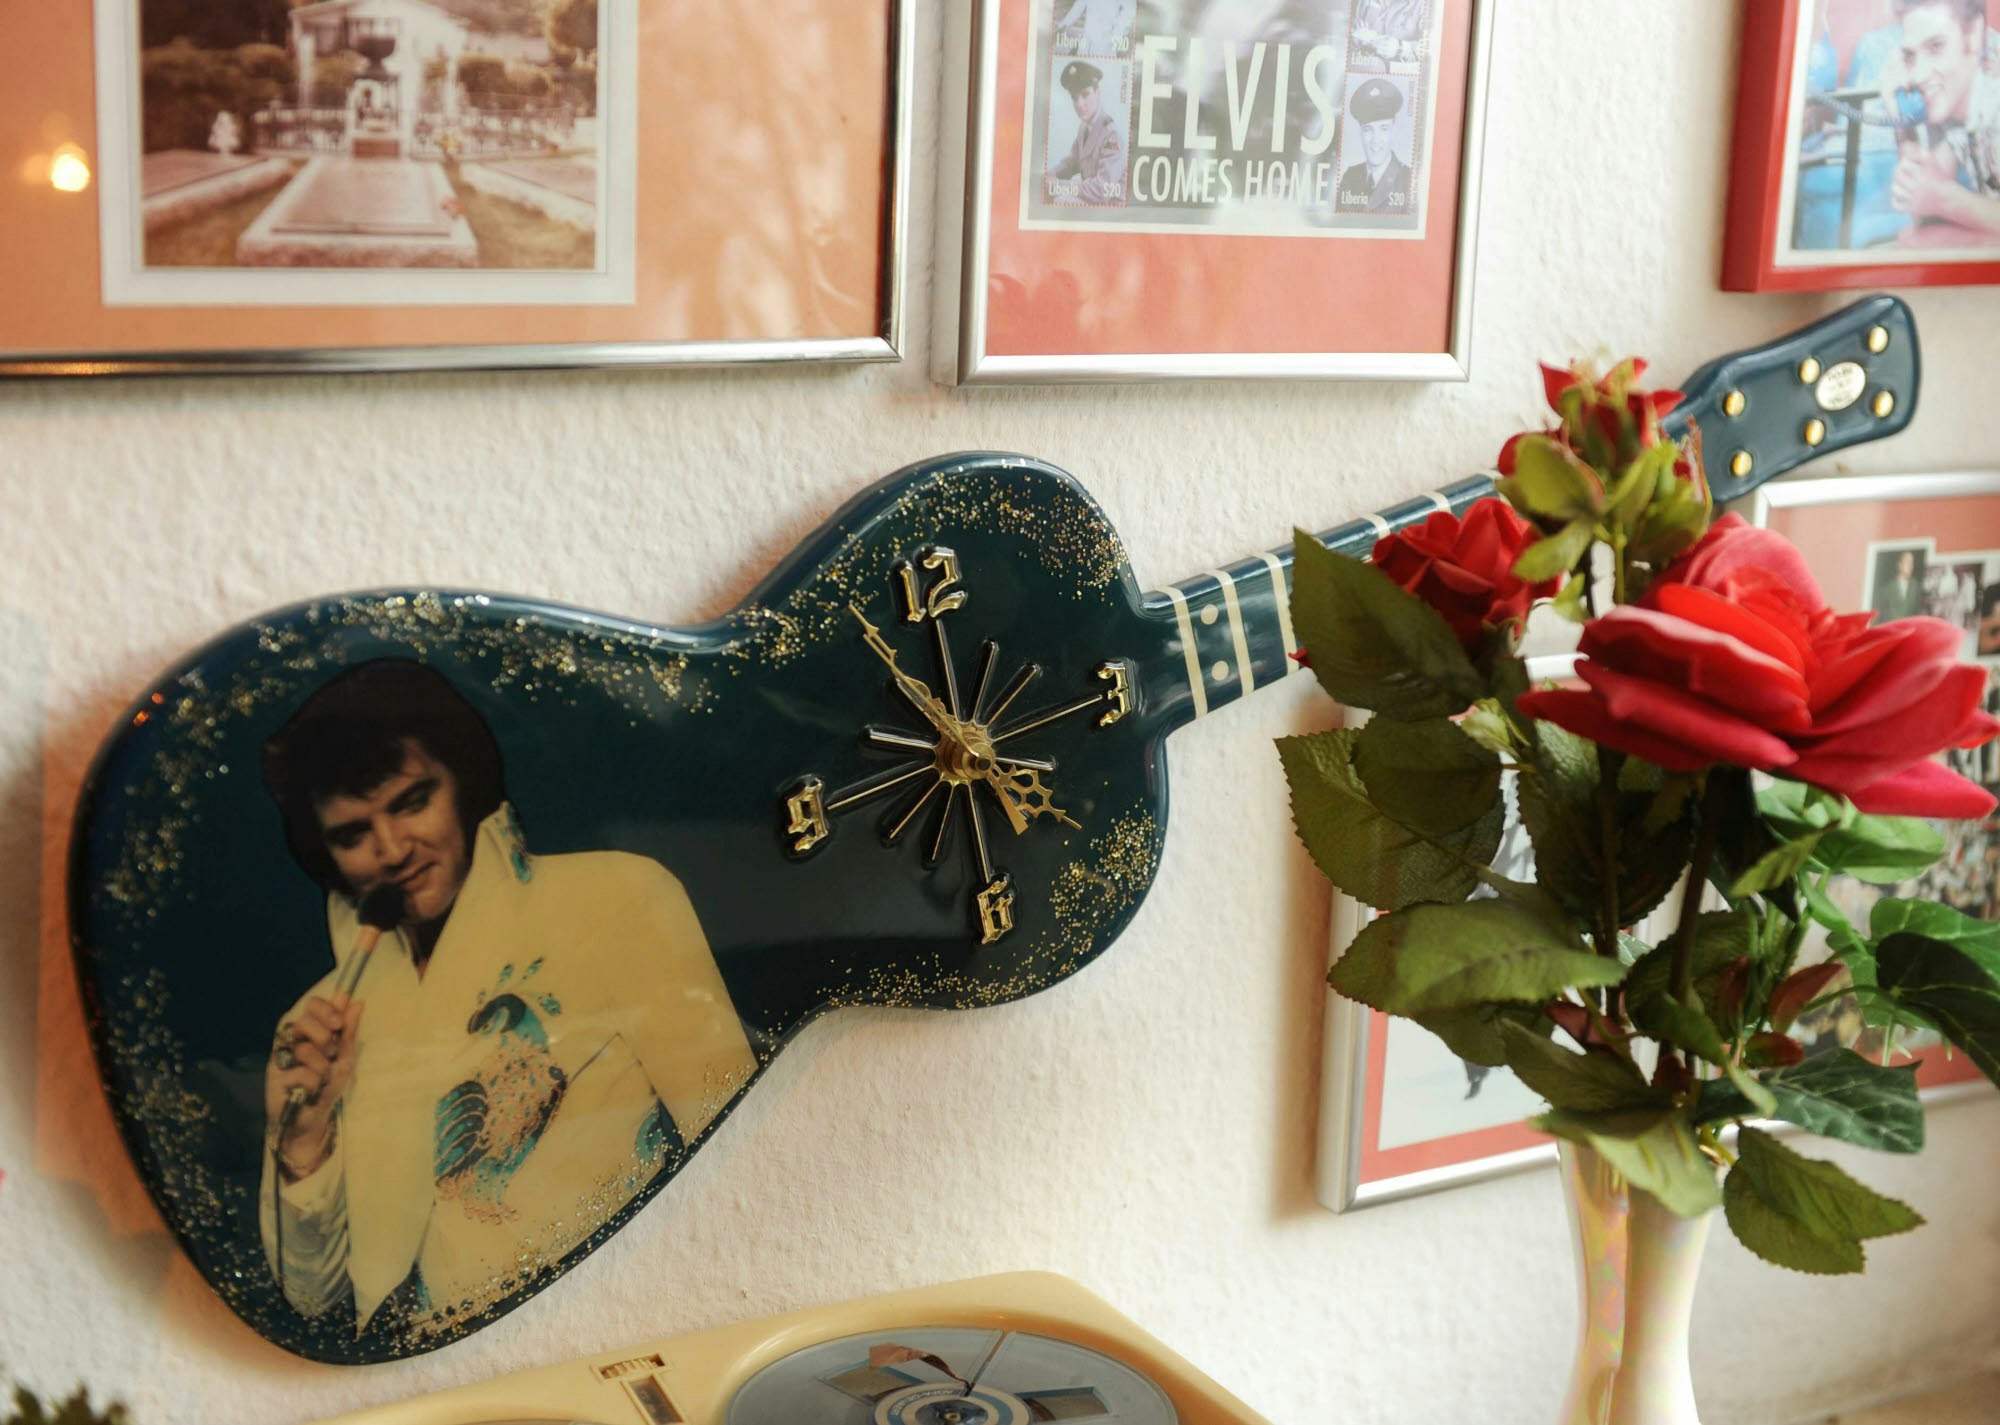 Mehrere Tausend Elvis-Erinnerungsstücke hat Hans Rüth gesammelt. Neben Schallplatten, Filmen und Postern sind auch ungewöhnliche Dinge darunter, wie etwa eine Elvis-Uhr in Gitarrenform